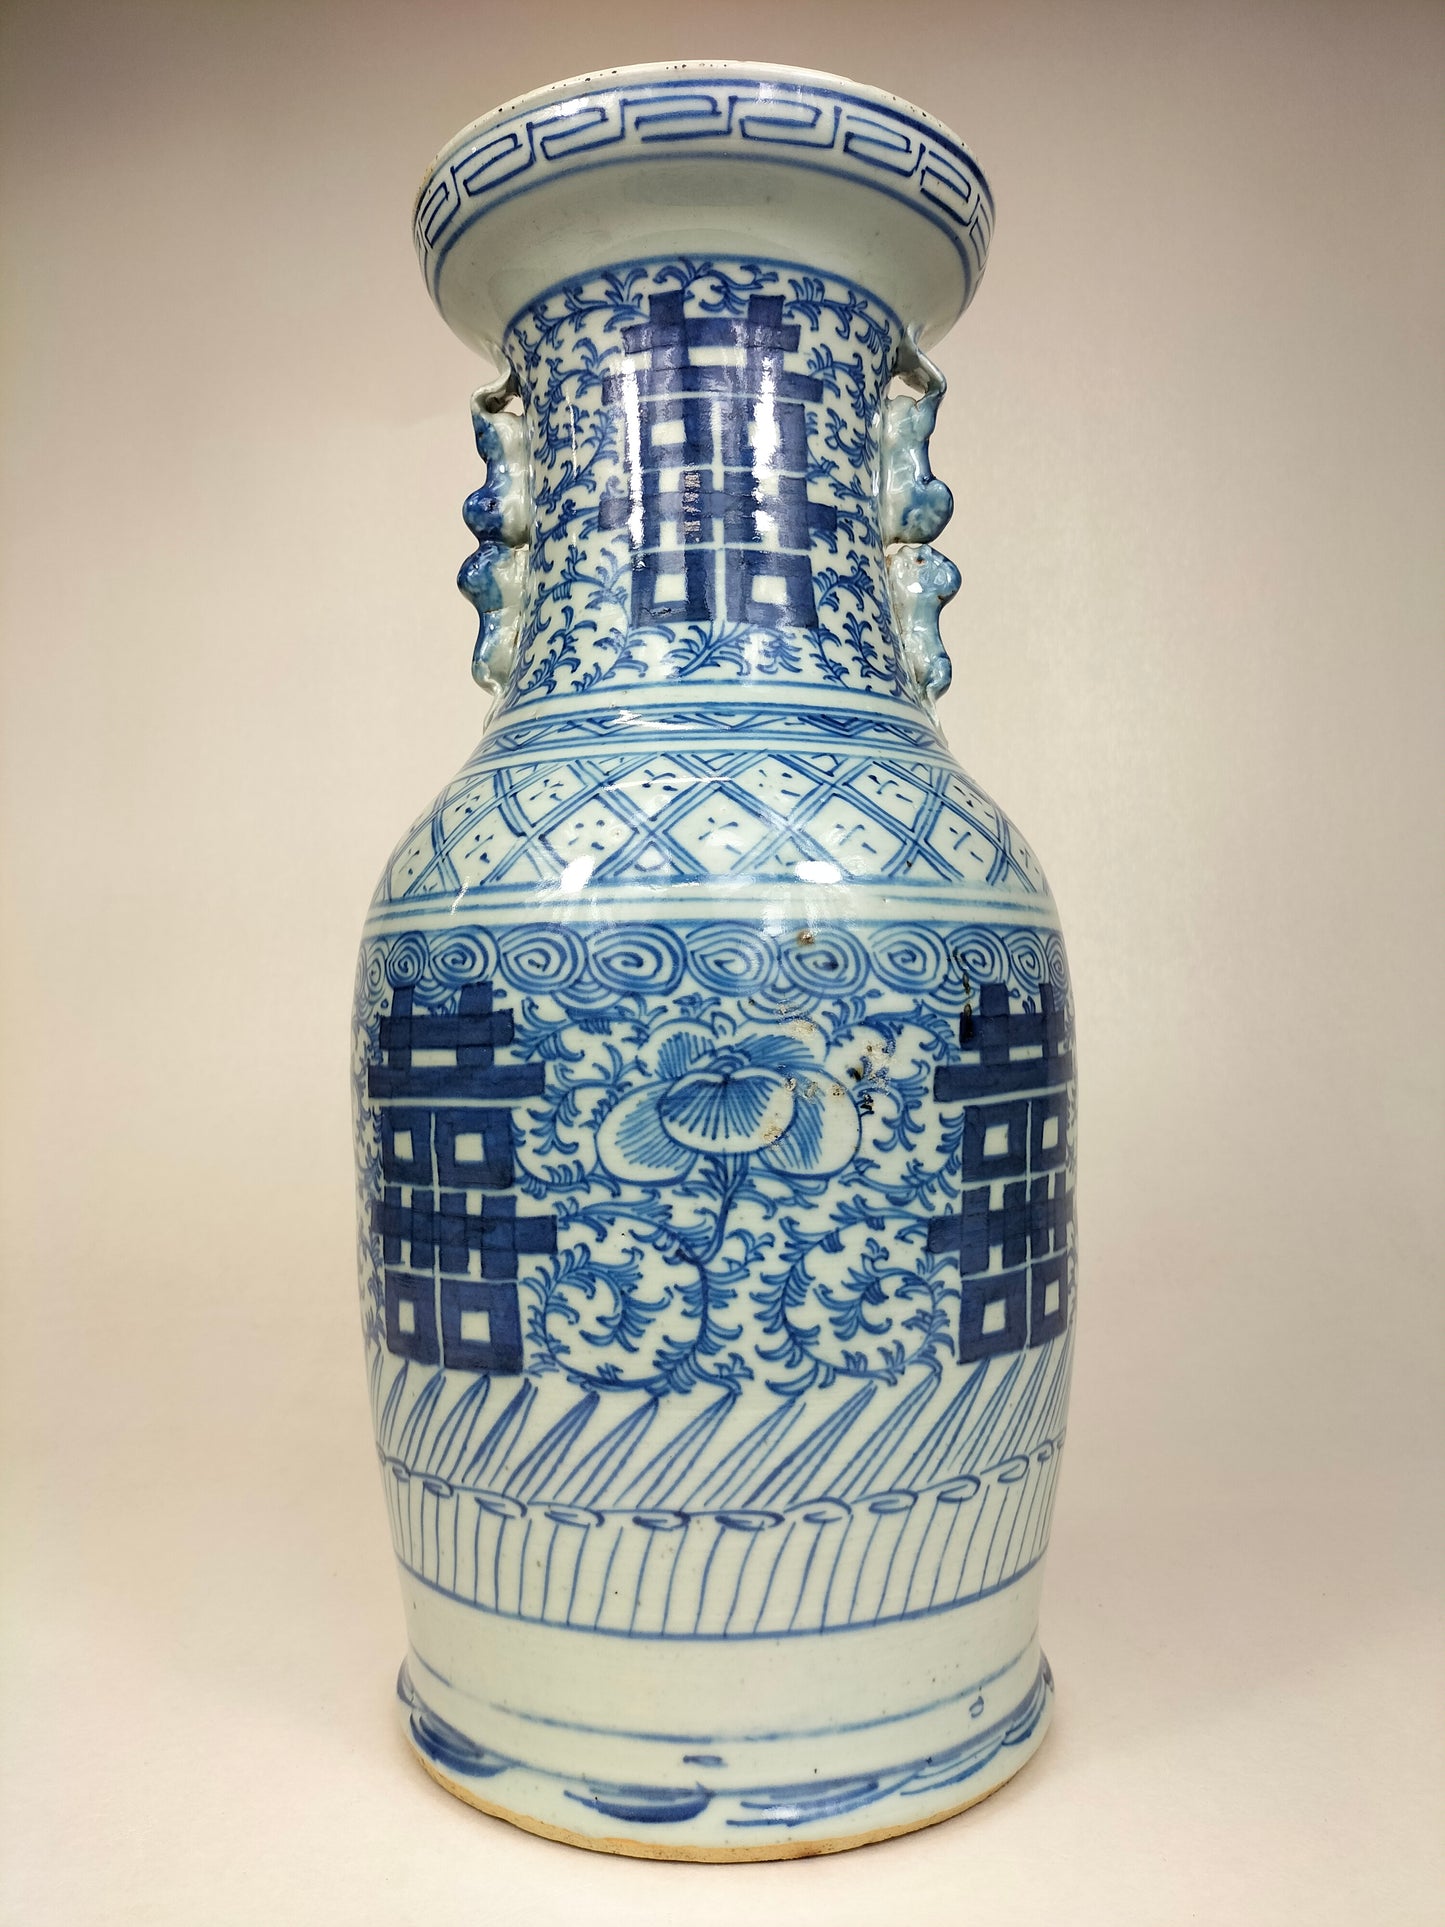 古董中国双喜结婚花瓶/清朝 - 19 世纪